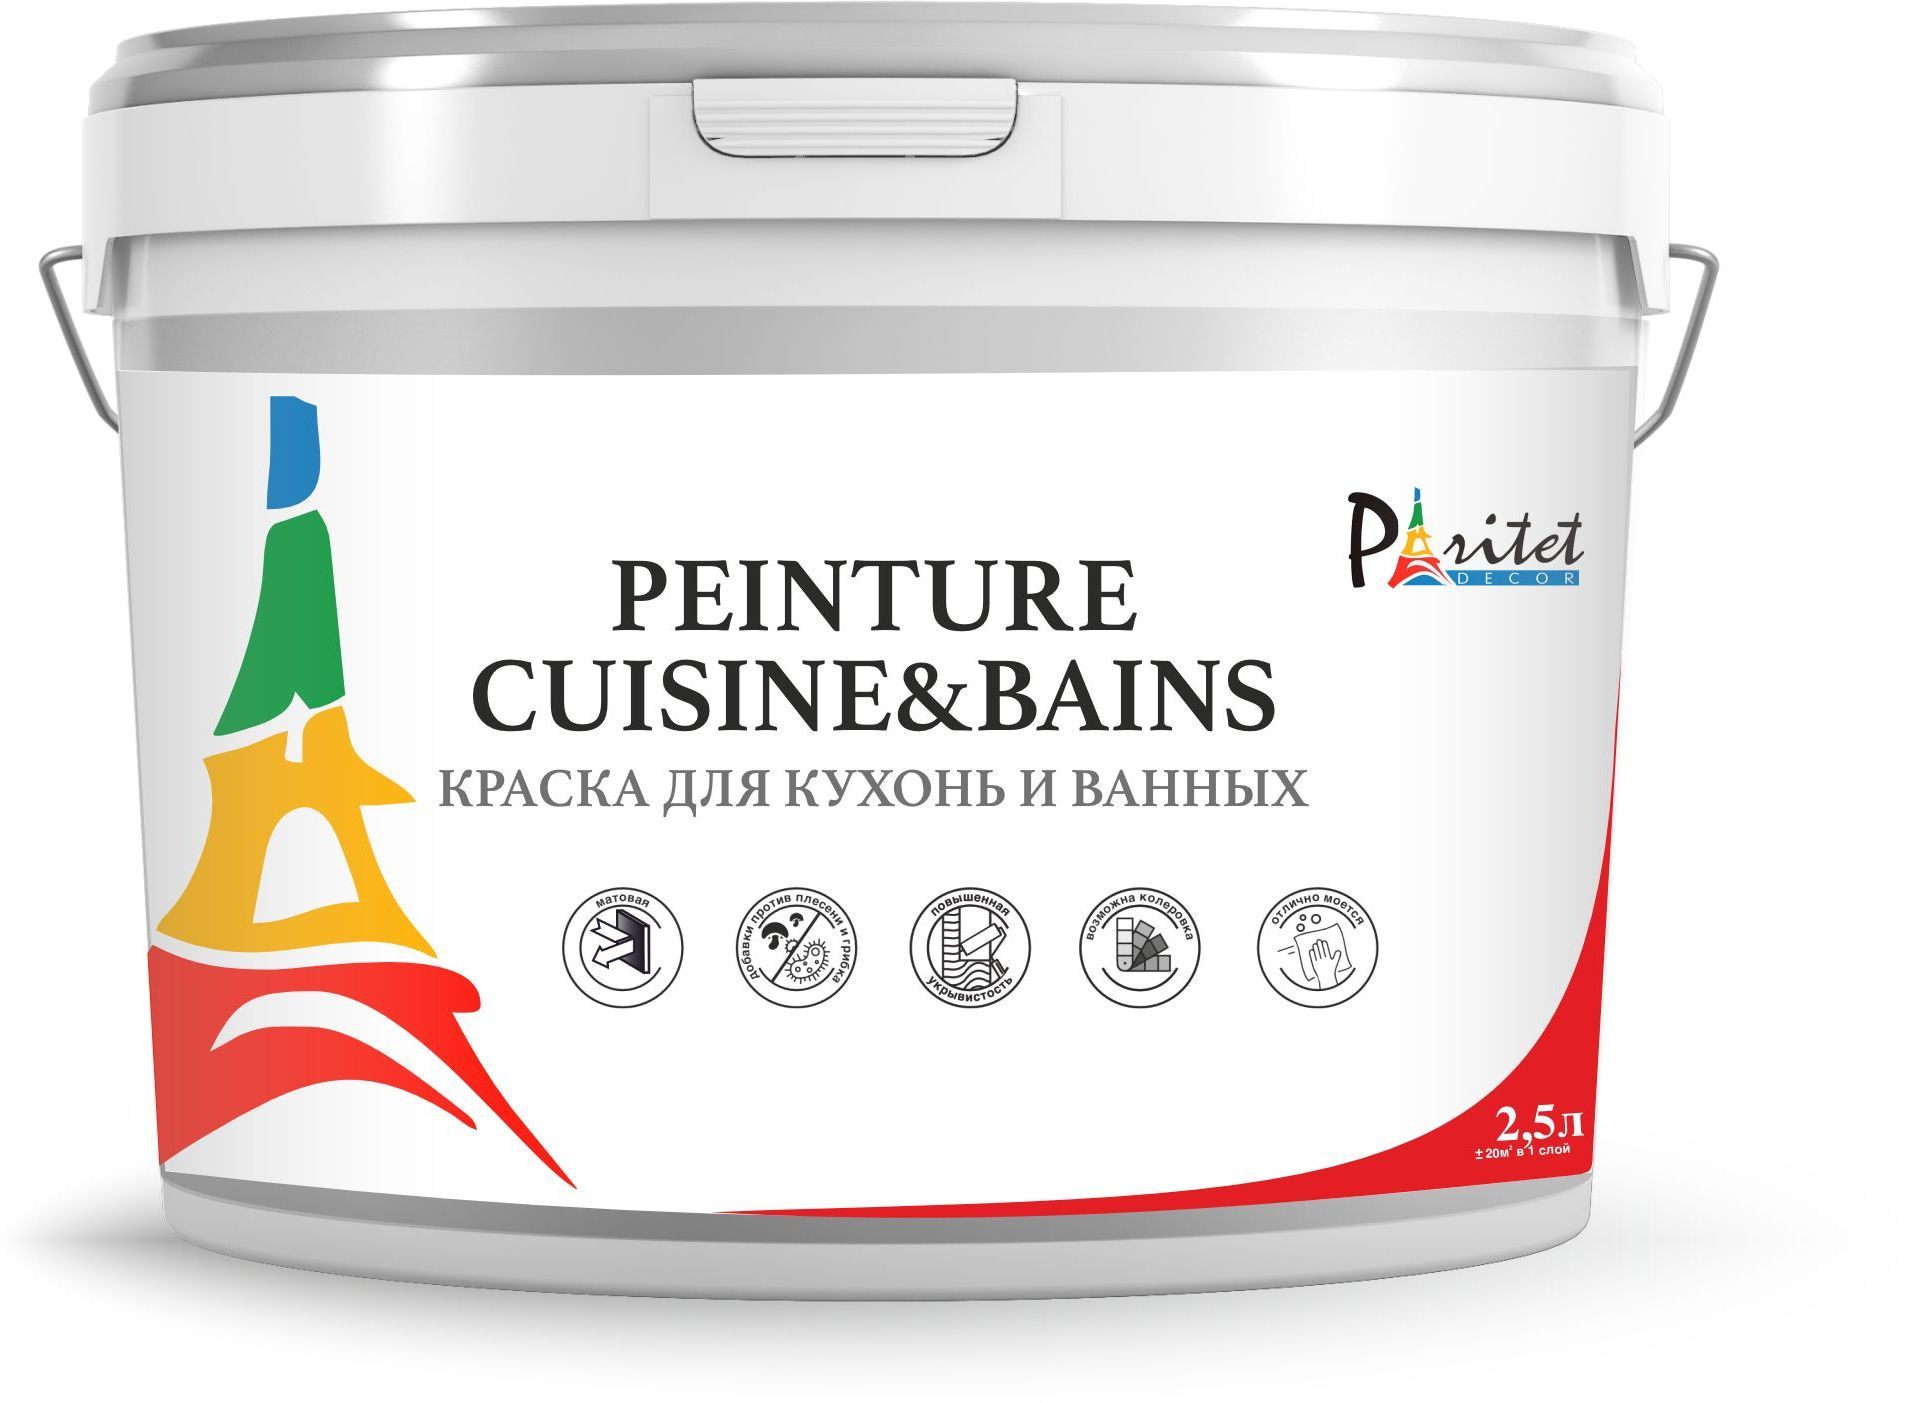 Краска интерьерная для кухонь и ванных Paritet Peinture Cuisine&Bains, 2,5л